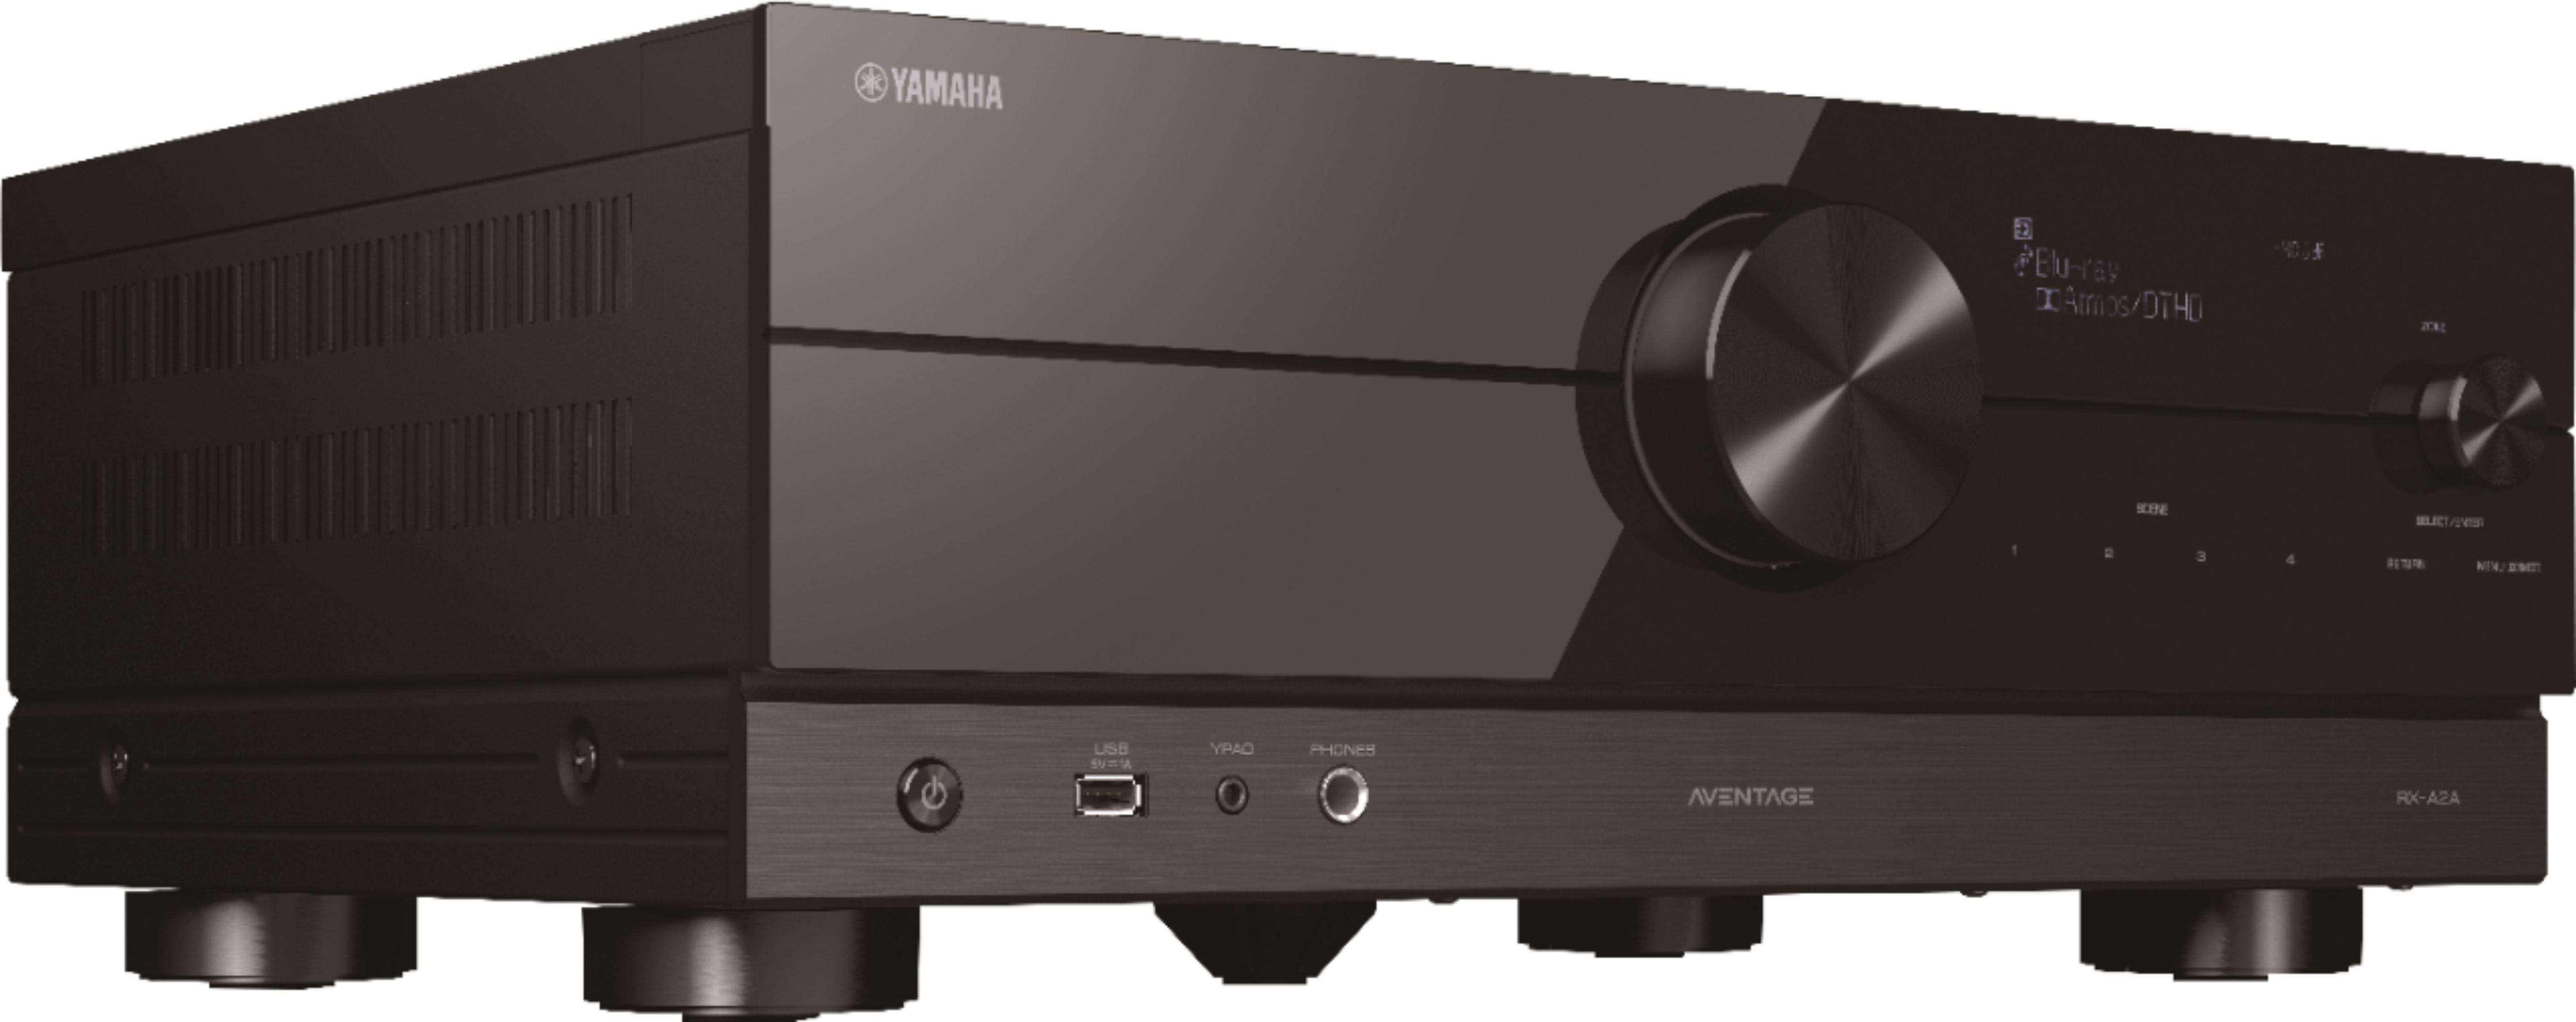 Yamaha RX-A2A receptor-av - Audio y Cine tienda oficial Yamaha